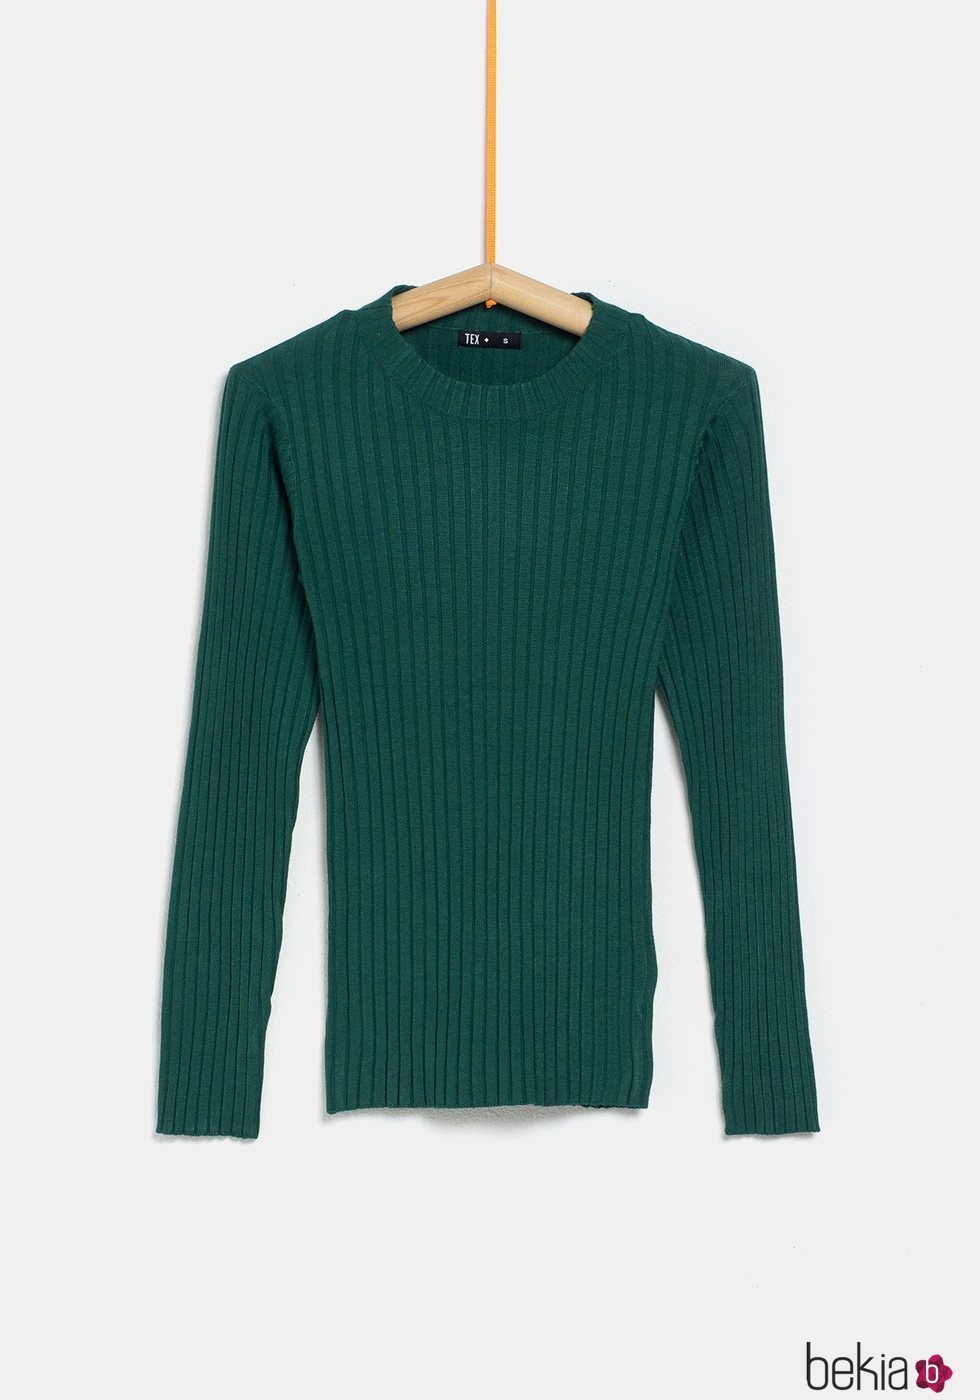 Jersey verde ceñido de la colección 'I-O' de Carrefour y TEX para otoño/invierno 2019